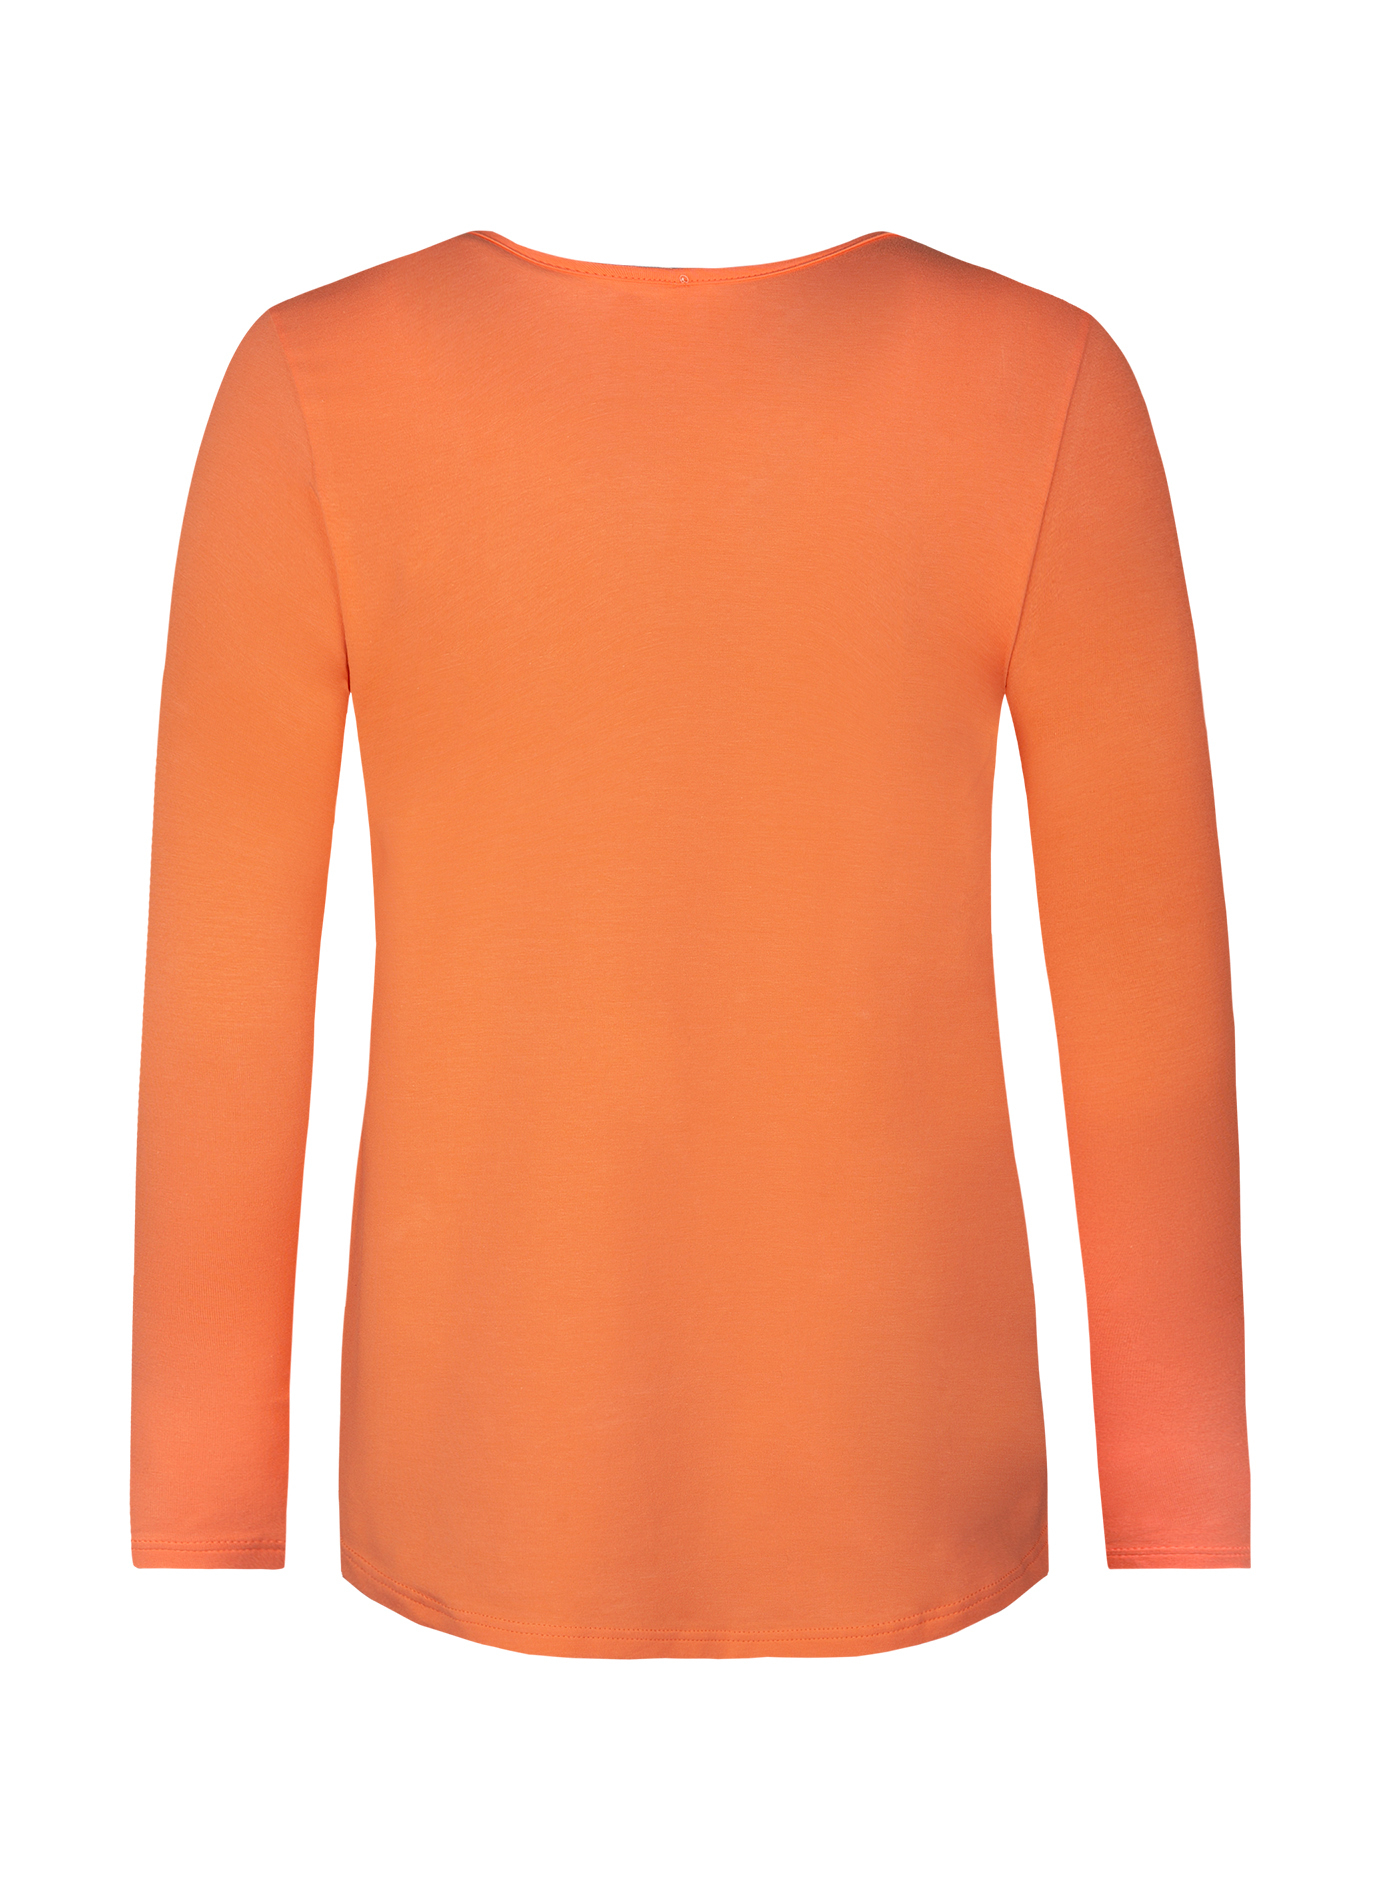 Damen-Langarmshirt Orange